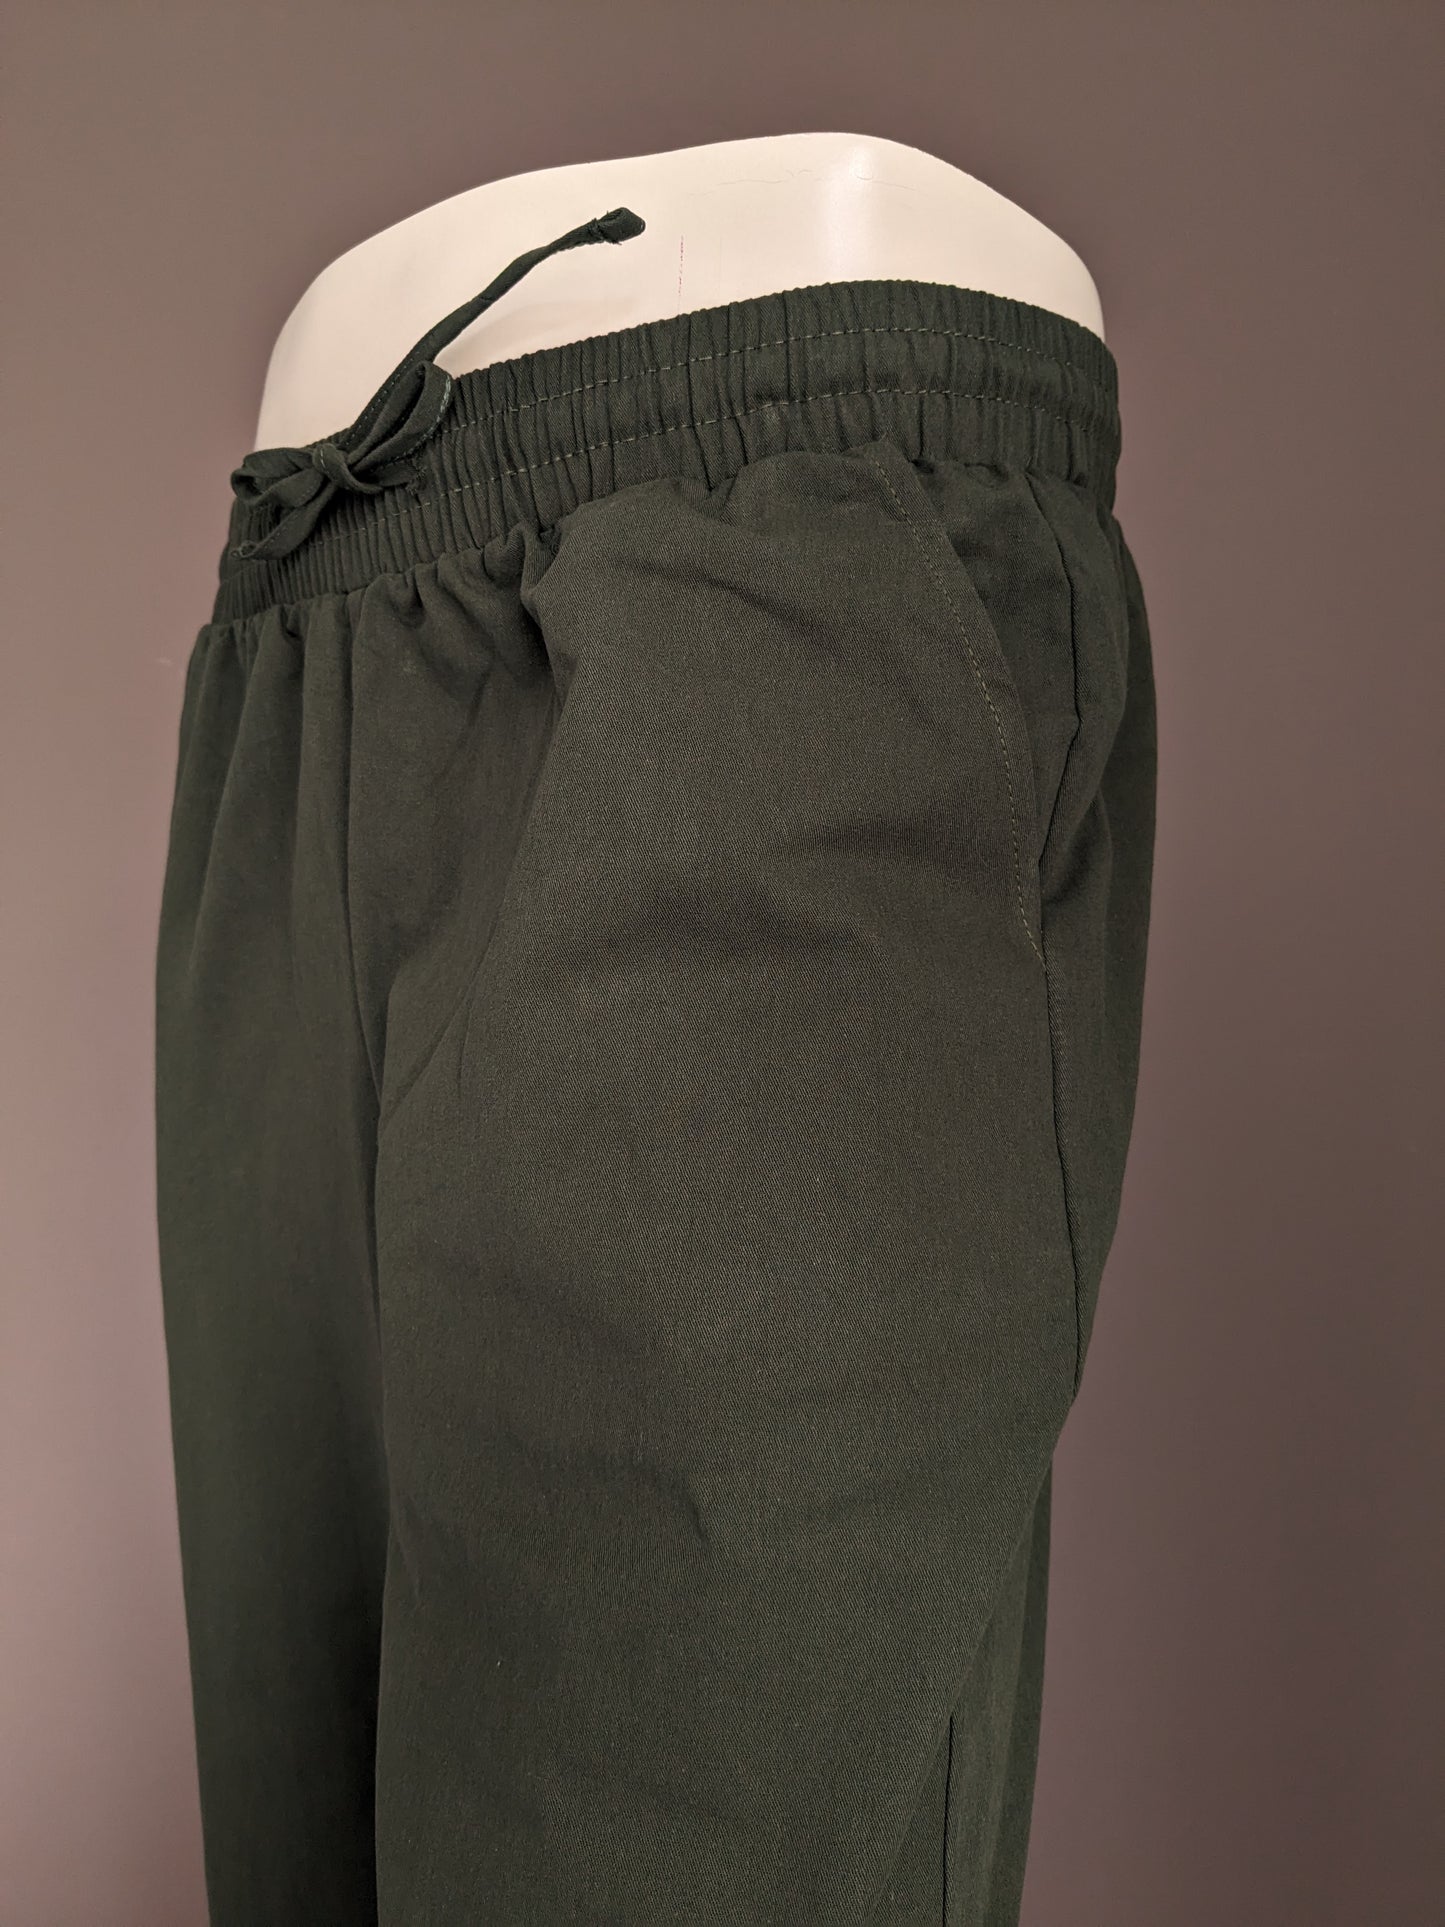 Pantaloni casuali senza marca con banda elastica. Verde colorato. Misurare